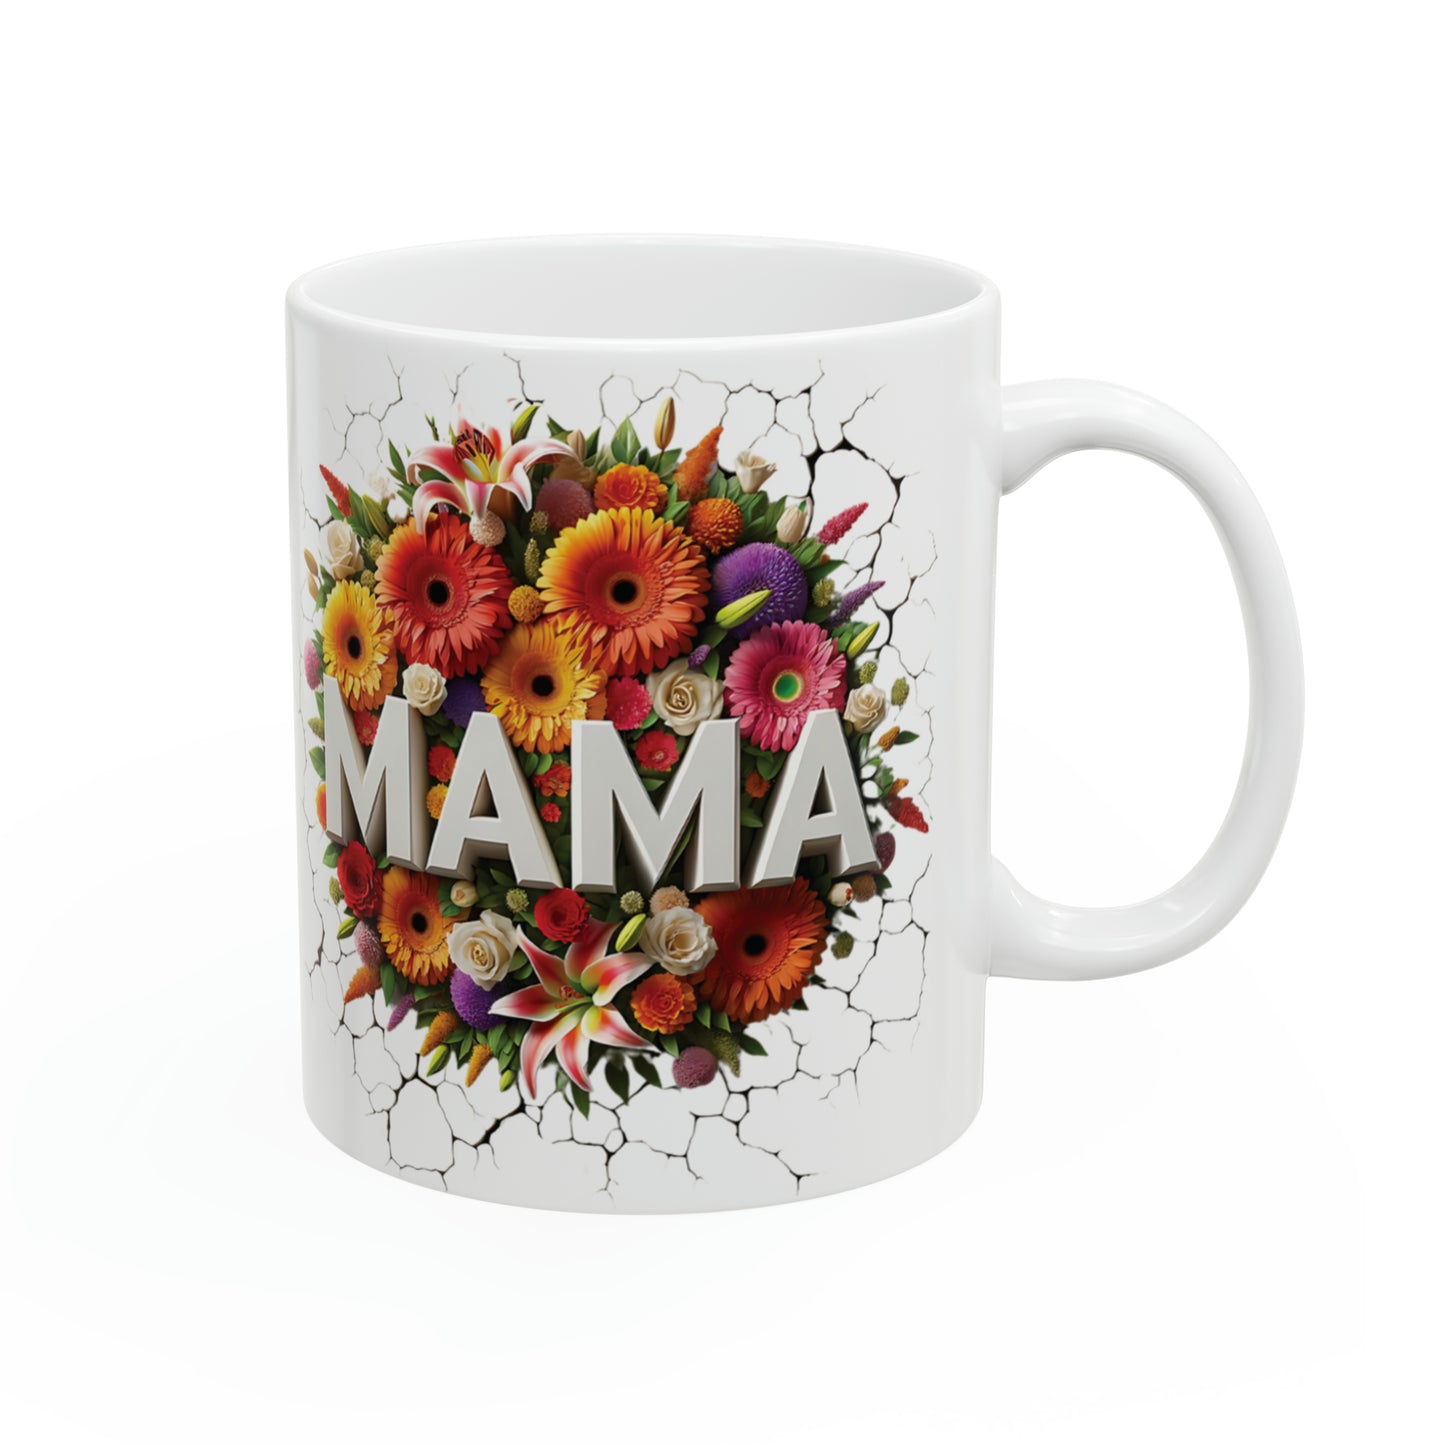 MAMA LOVE Ceramic Mug, 11oz